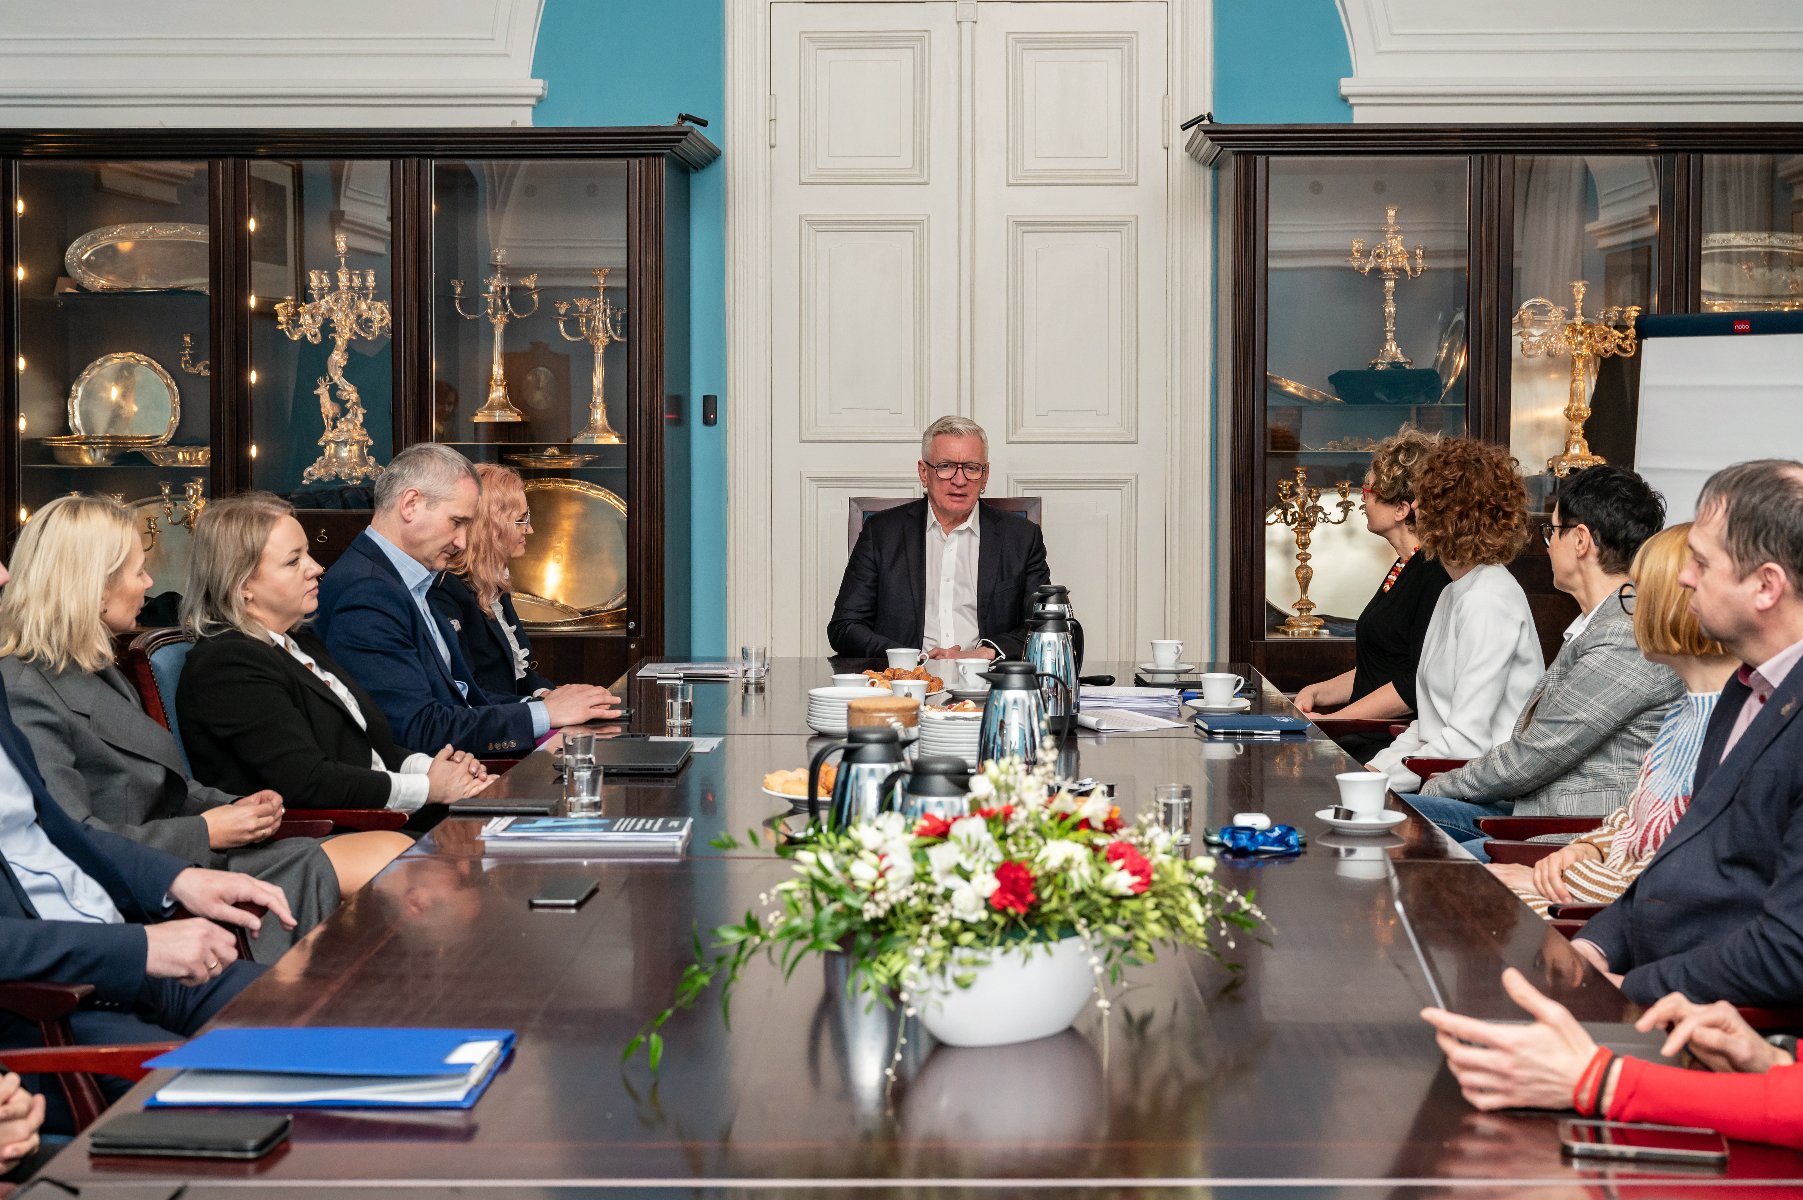 Na zdjeciu grupa ludzi za stołem, u szczytu stołu siedzi prezydent Poznania - grafika artykułu